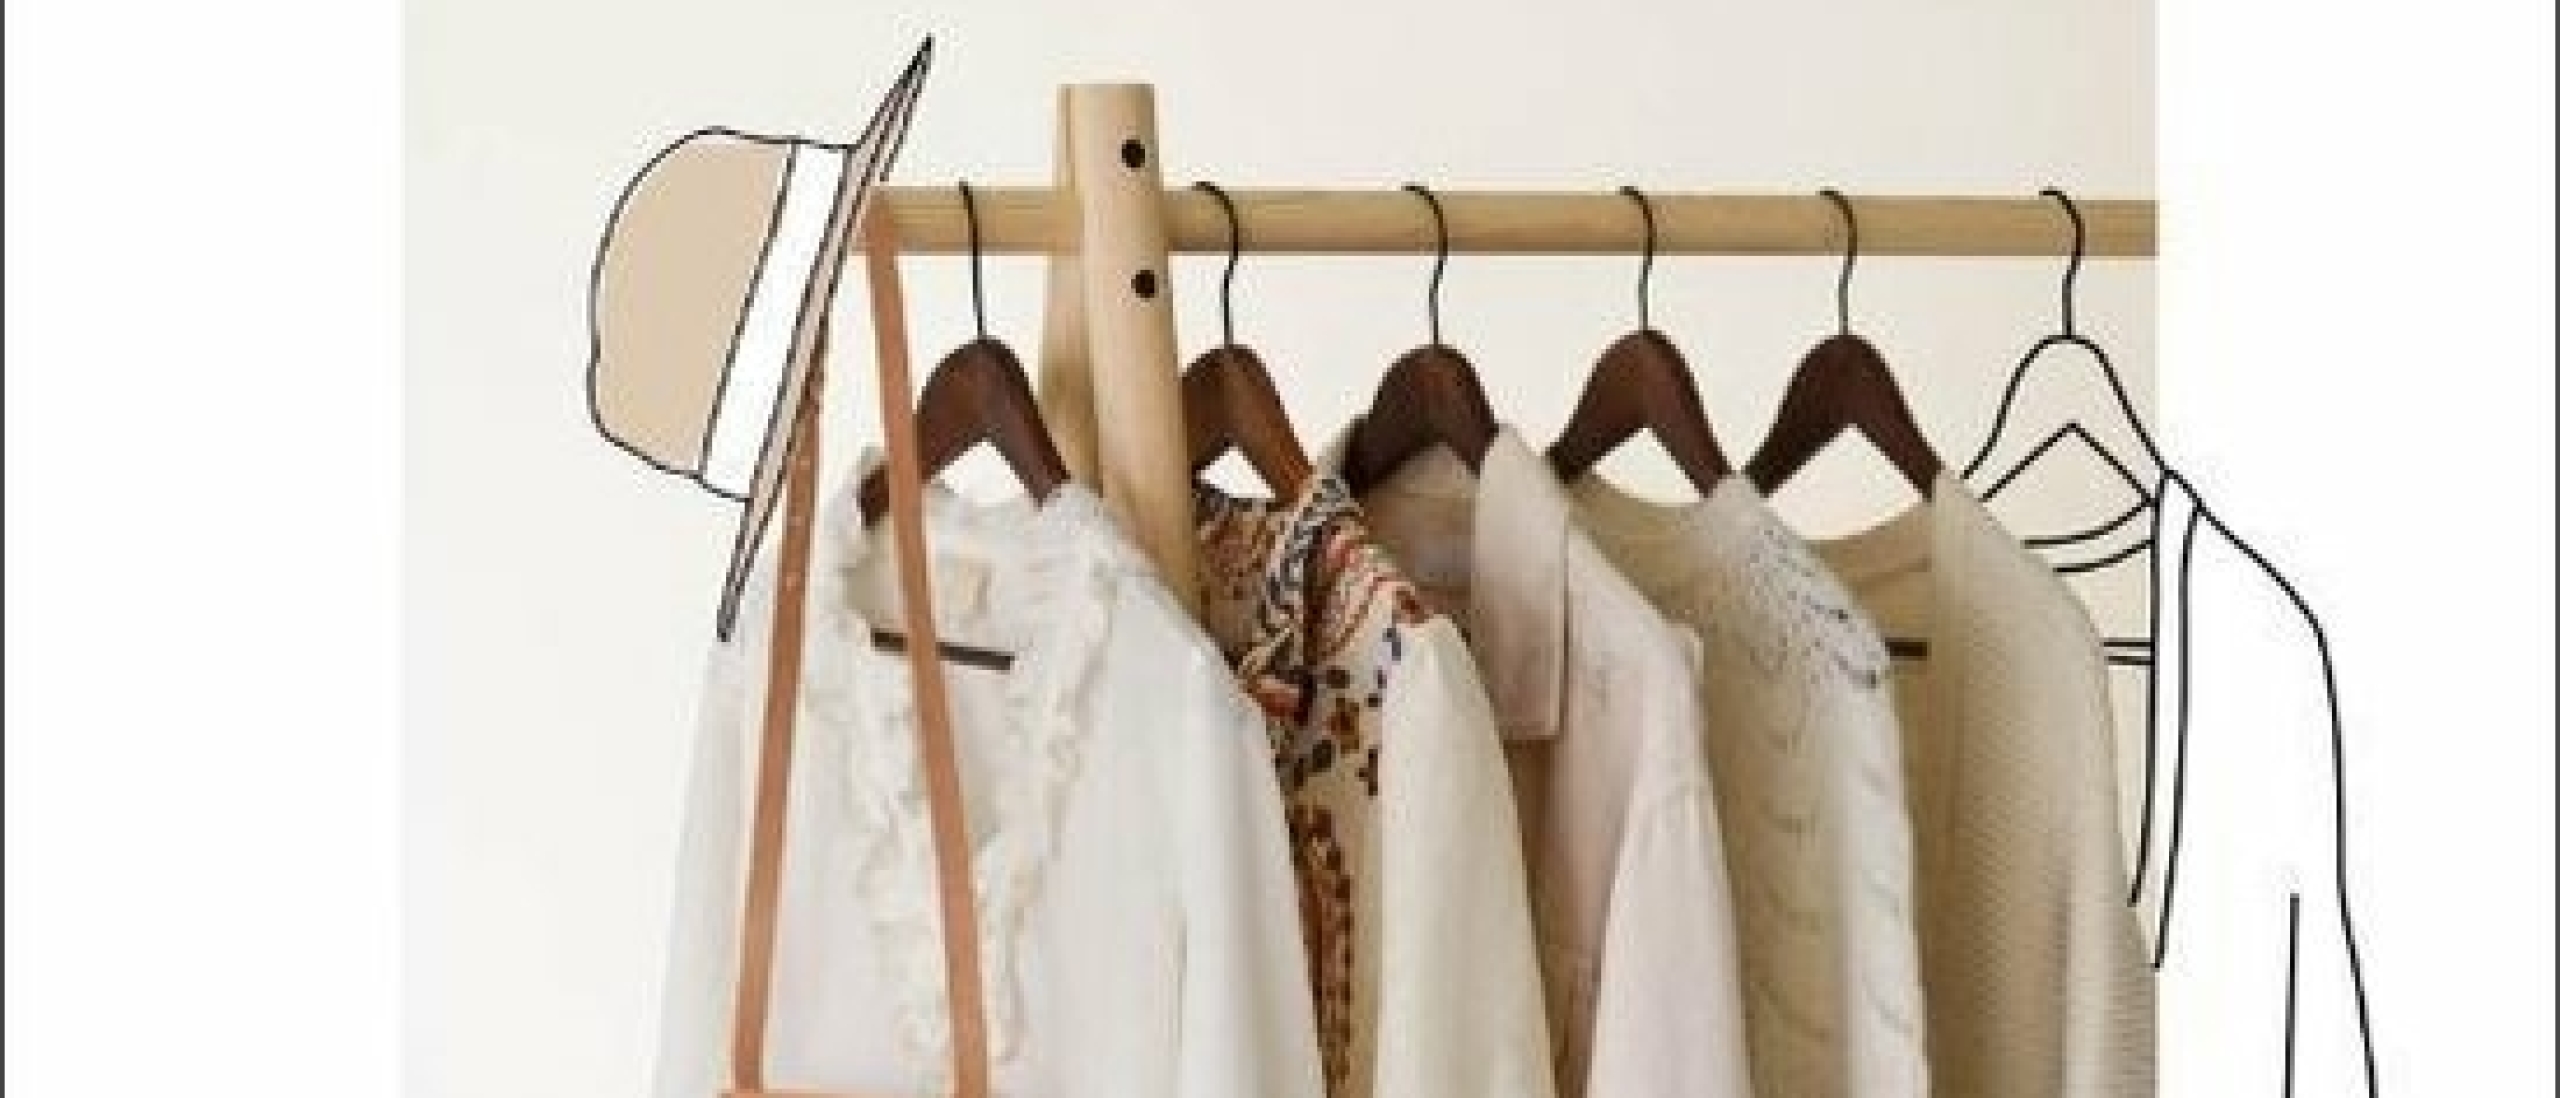 Duurzame garderobe aanleggen: tips voor een sustainable wardrobe